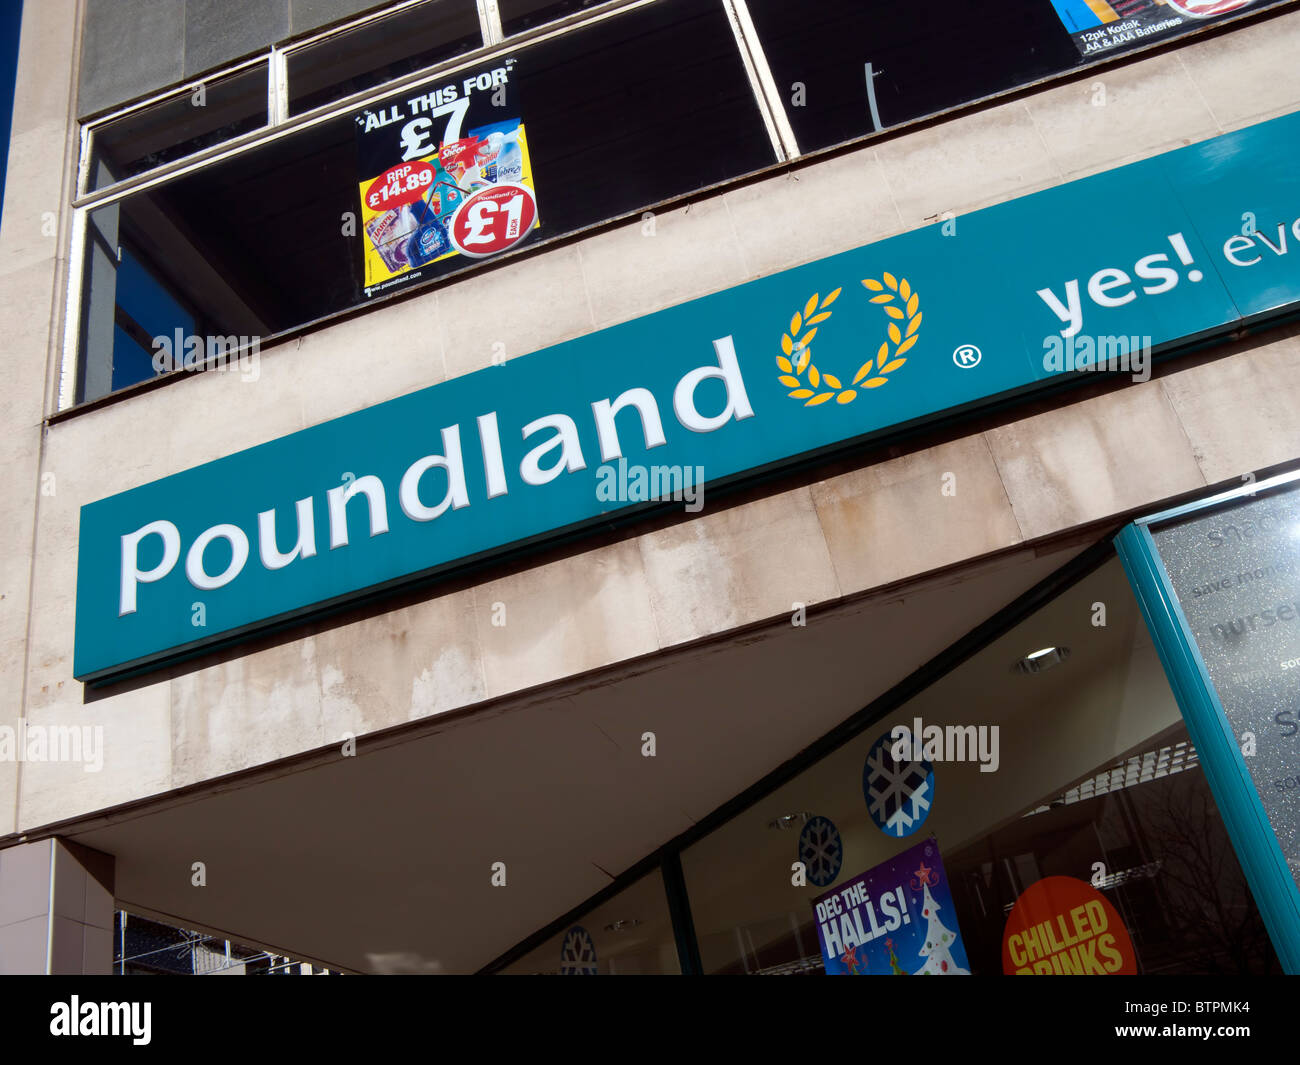 Poundland sign and logo Stock Photo